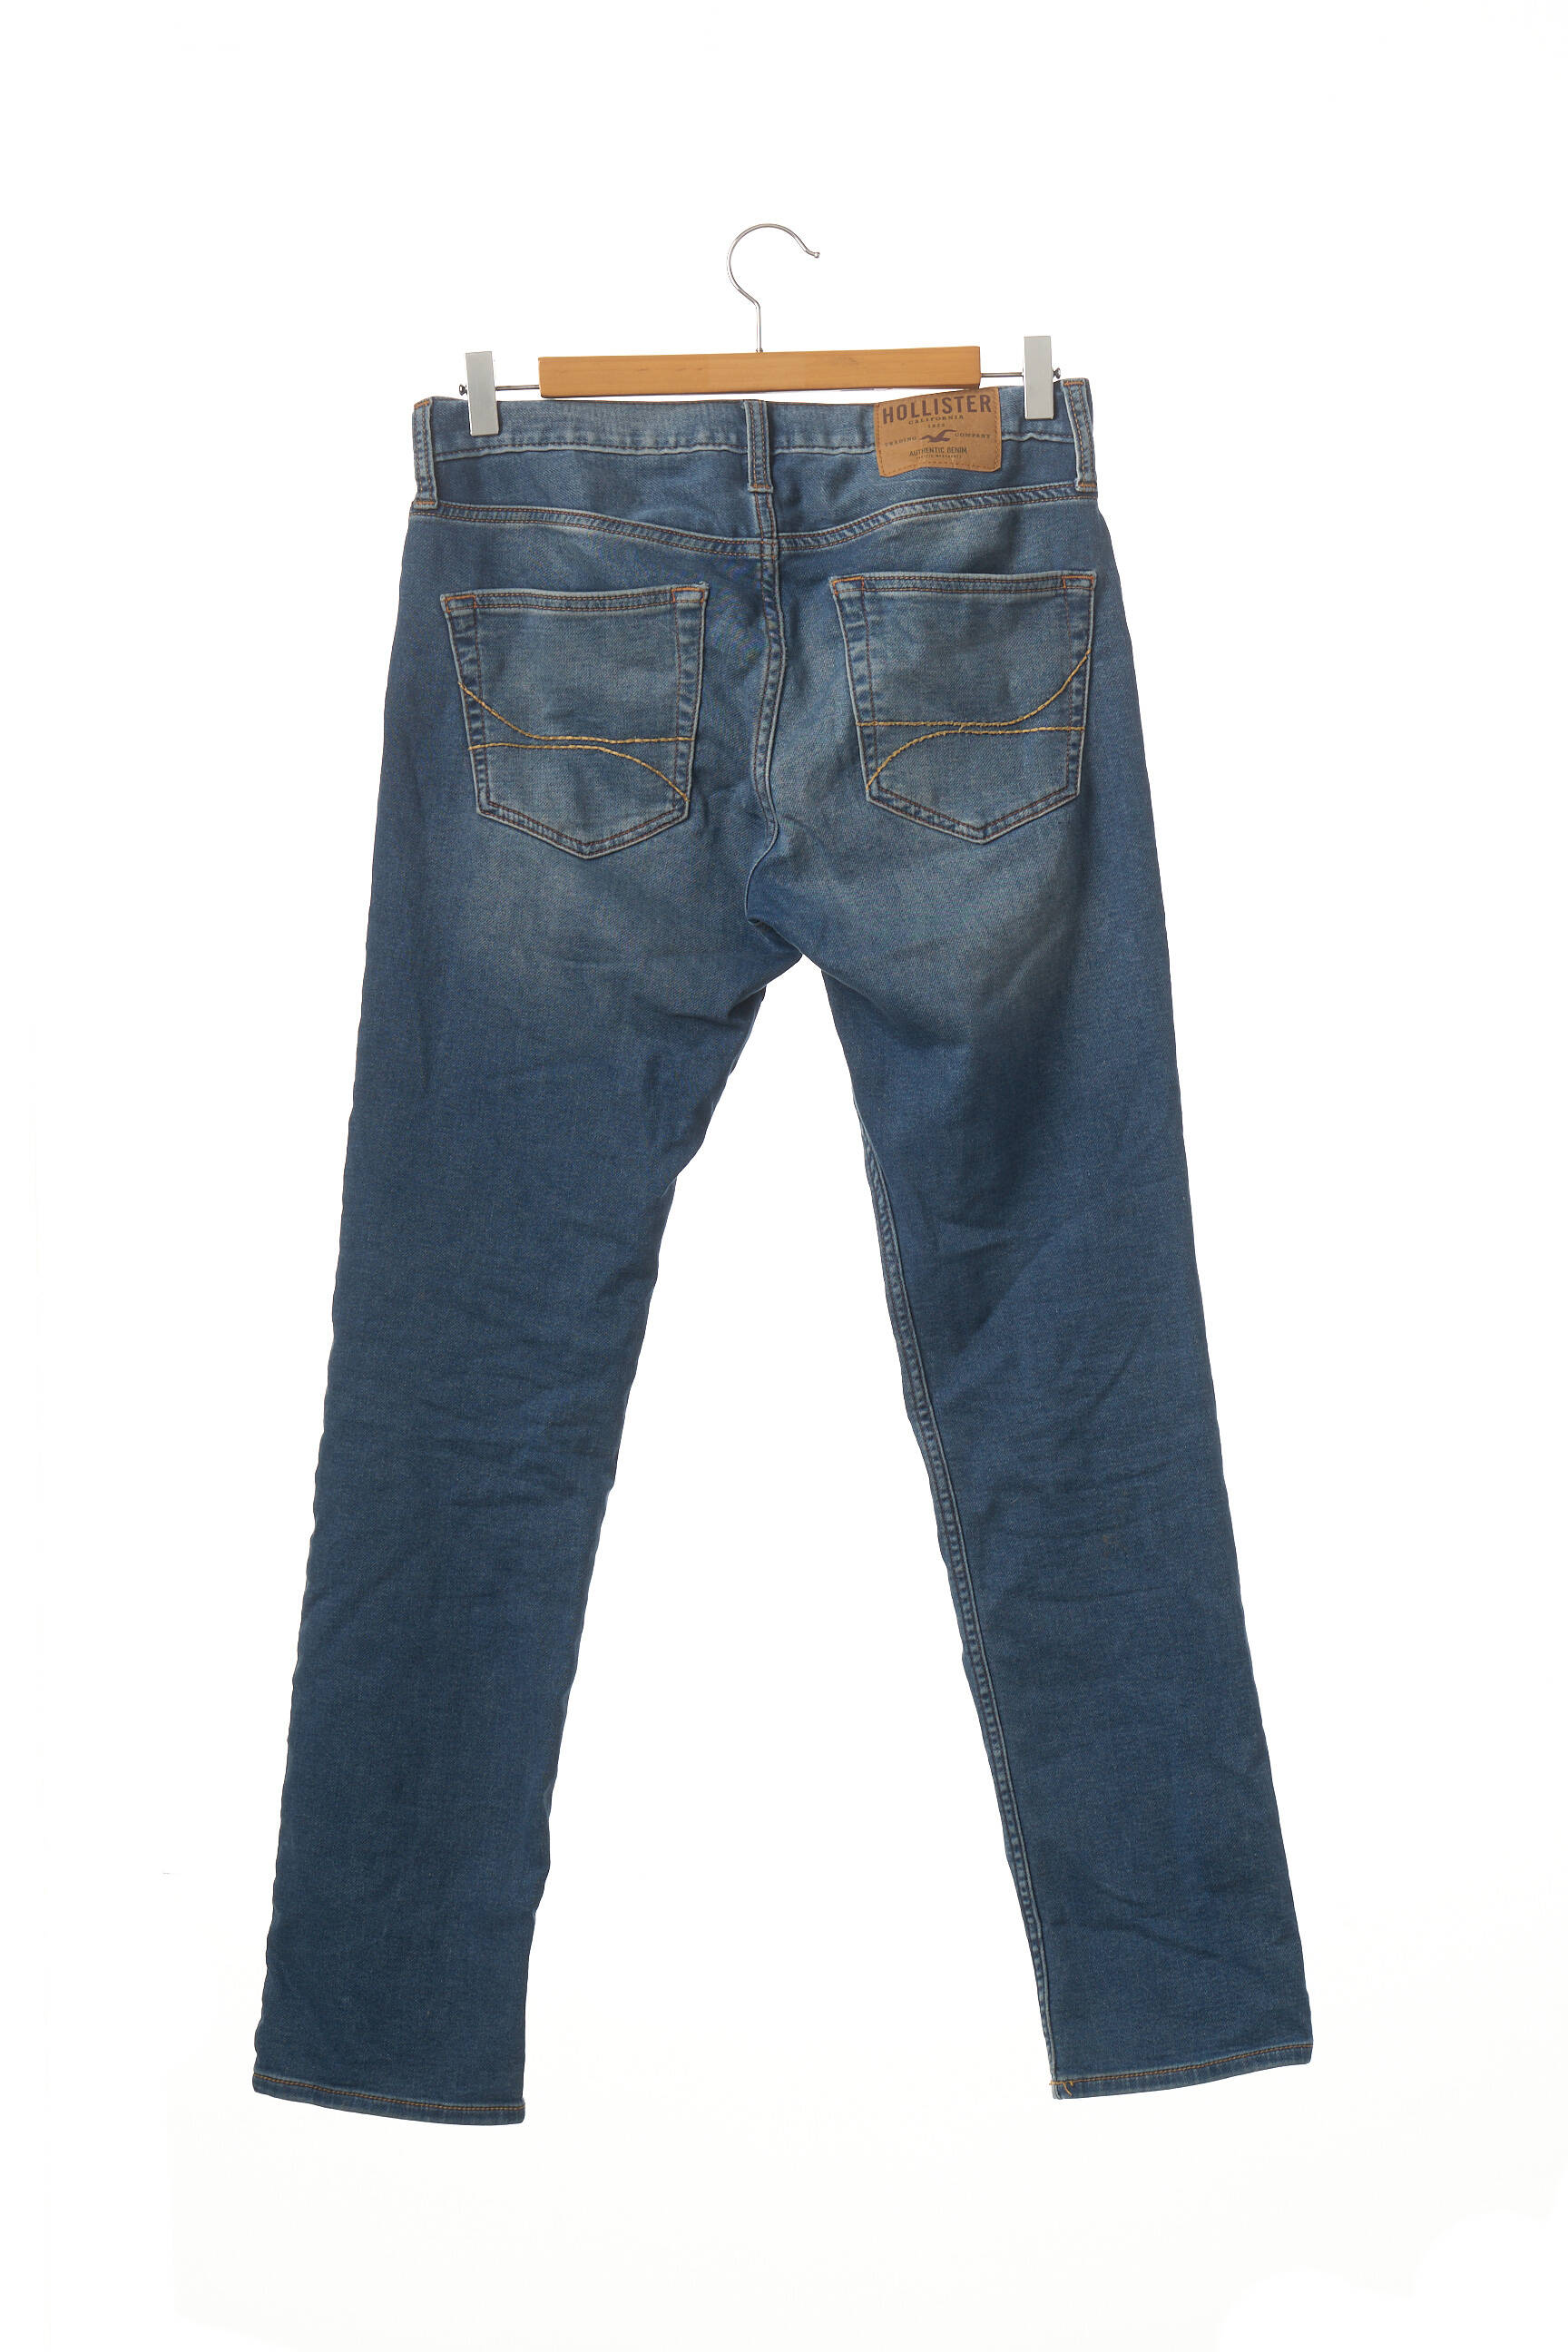 HOLLISTER Jeans coupe slim de couleur bleu en soldes pas cher  1825814-bleu00 - Modz